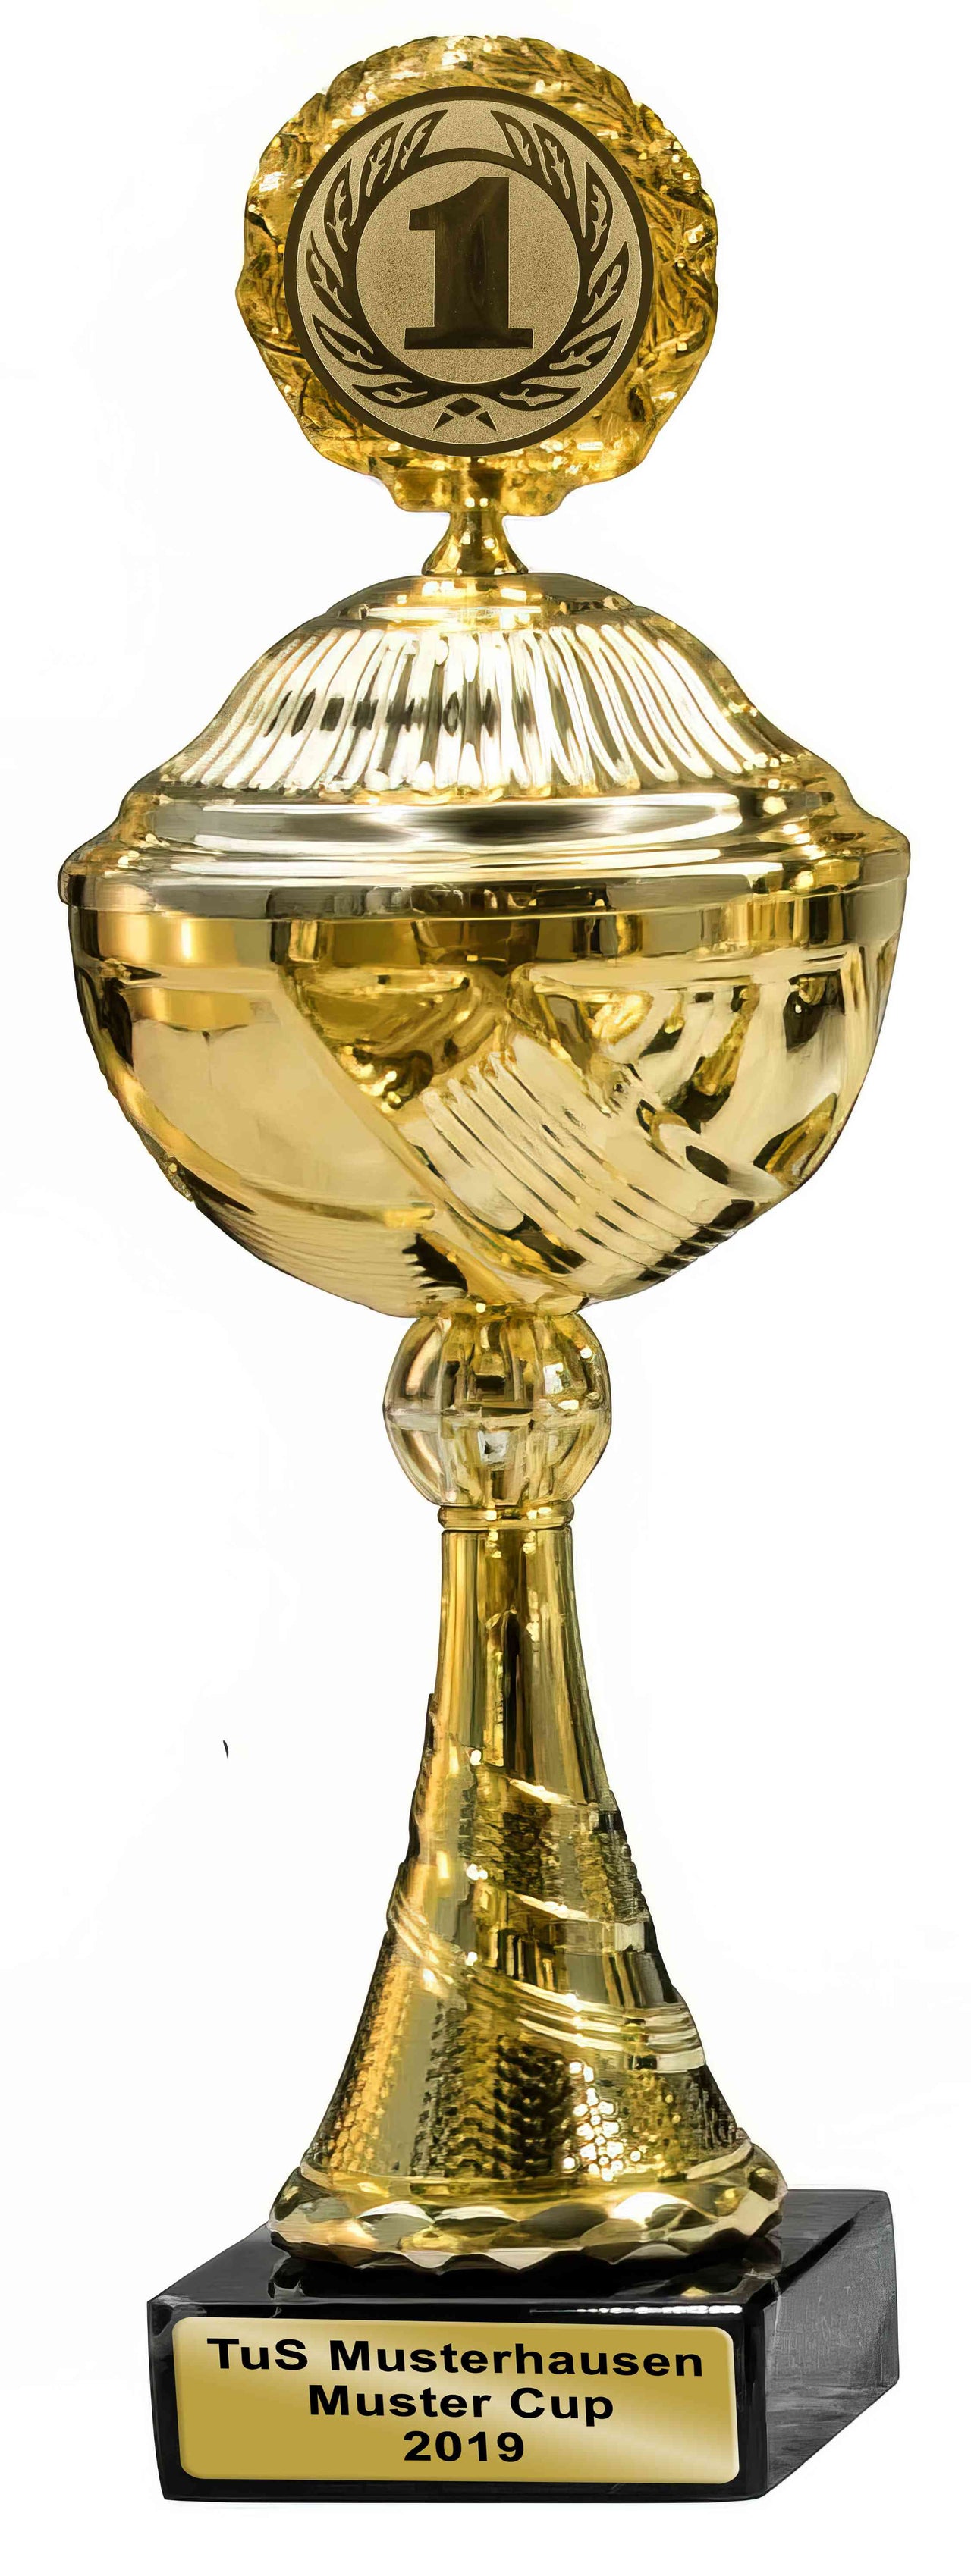 Goldener Pokal der Pokale Aachen, 4-er Pokalserie 253 mm – 275 mm PK759340-4-E50 mit einer Aufschrift „Tus Musterhausen Muster Cup 2019“ auf der Basis eingraviert, isoliert auf weißem Hintergrund.